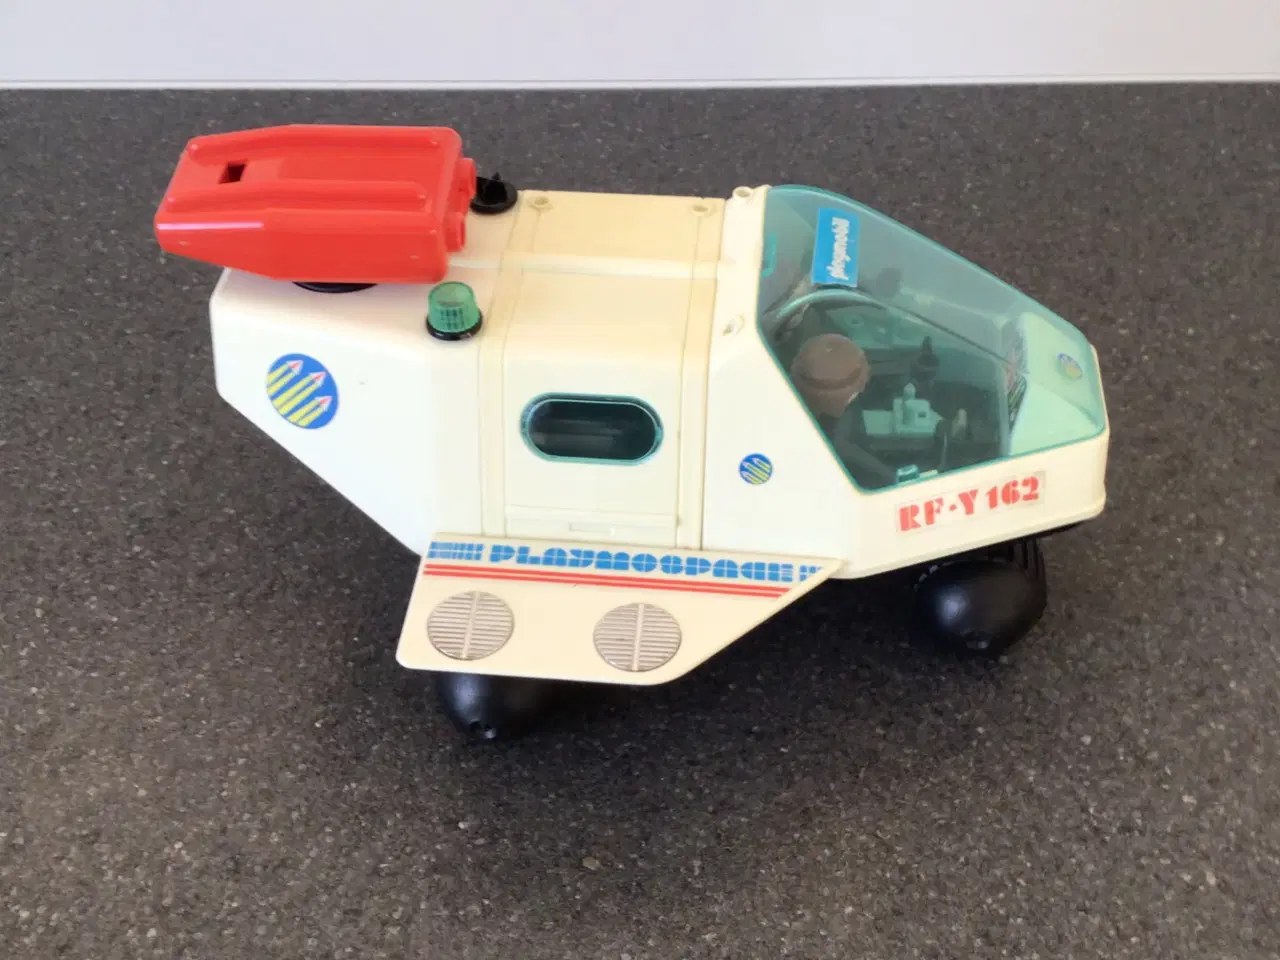 Billede 4 - Playmobil rumfærge